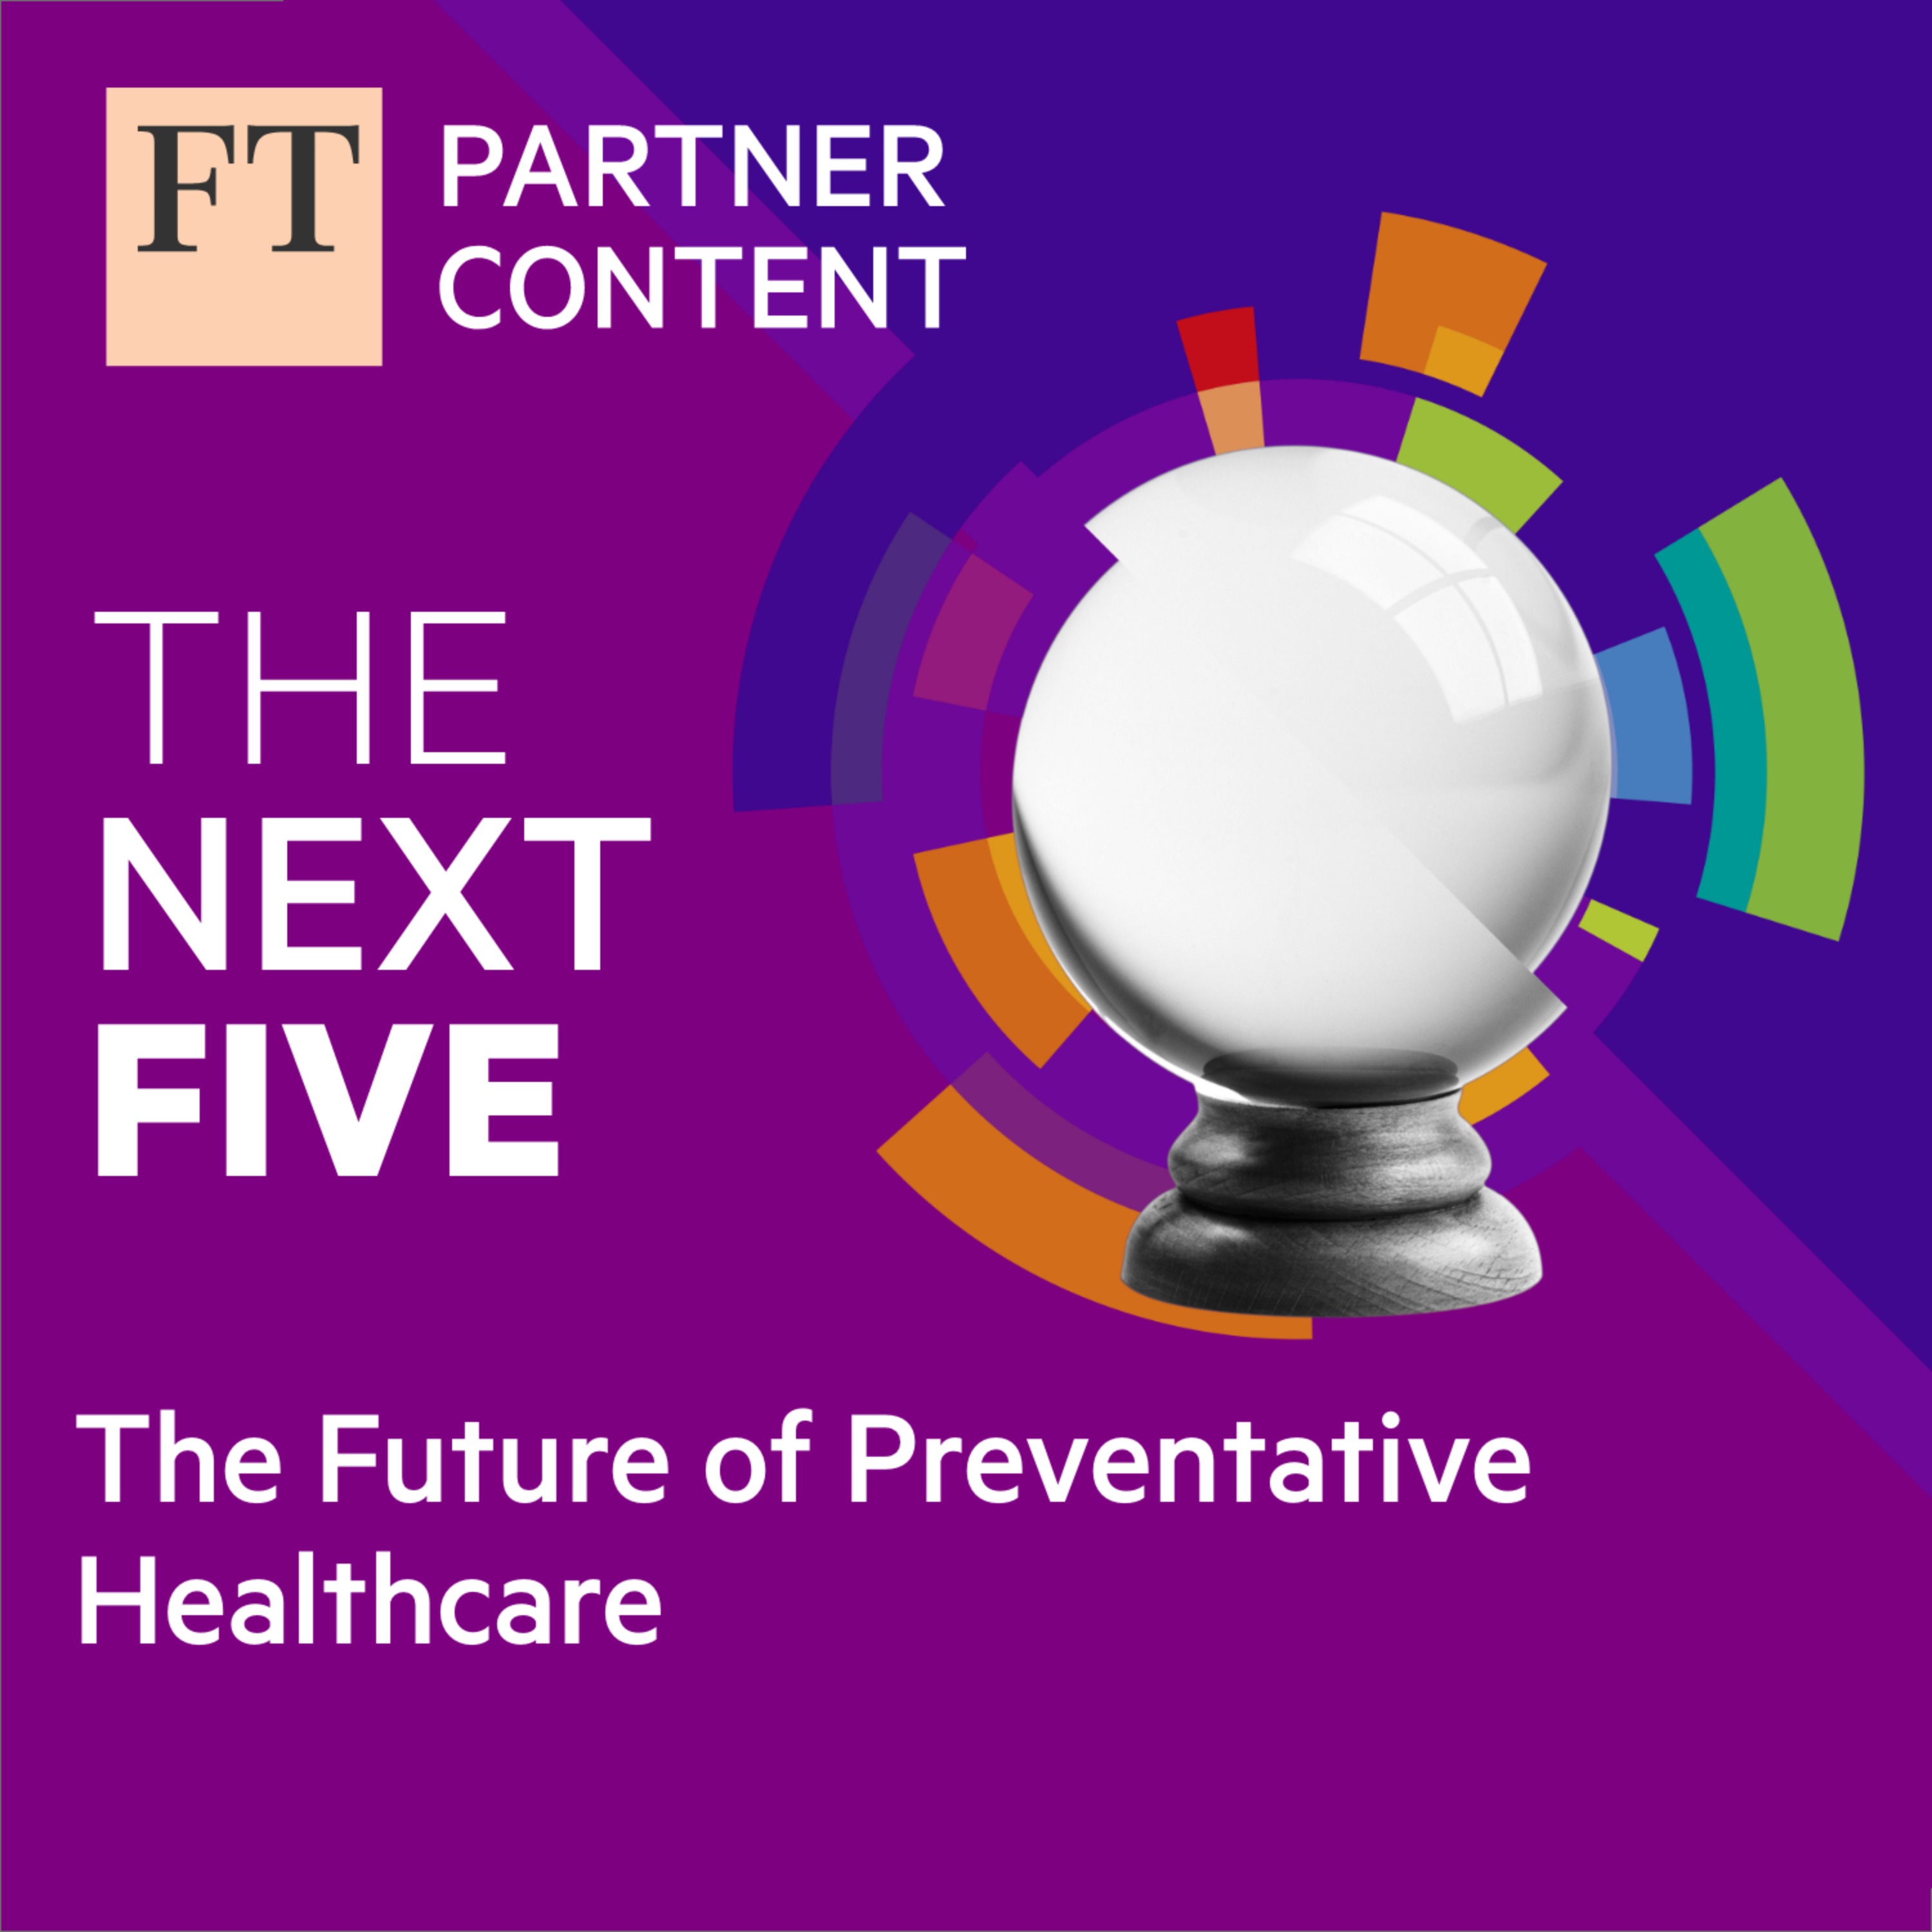 The Future of Preventative Healthcare